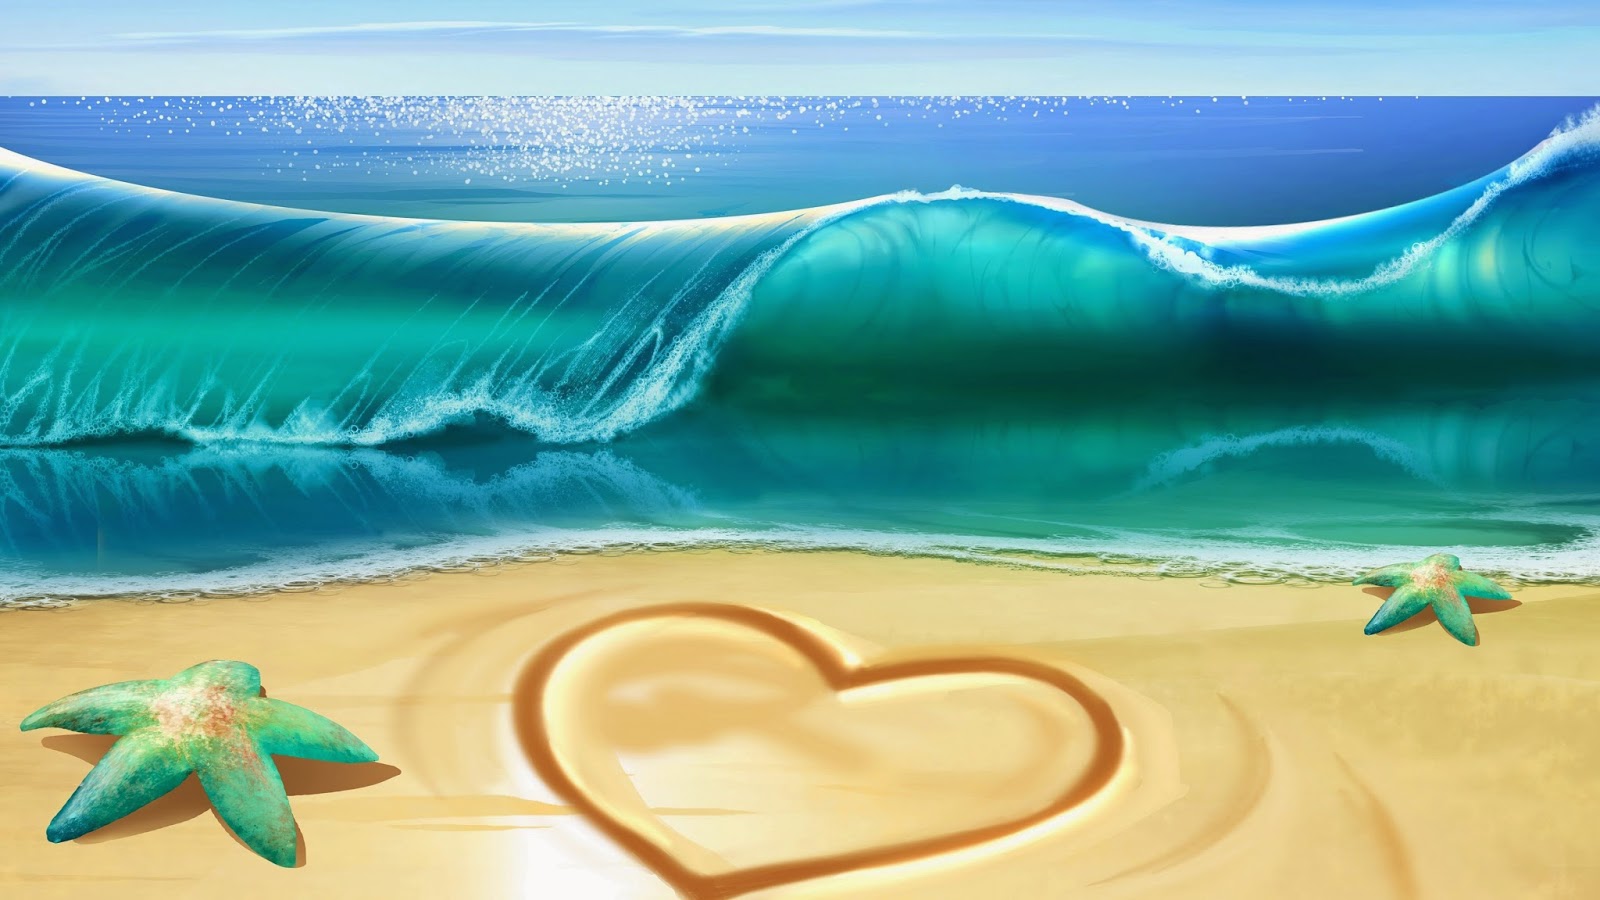 Trái tim trong cát: Trái tim đượm tình yêu, ghi lại những kỷ niệm đầy ý nghĩa trong cát mịn trắng tinh khôi. Hãy xem qua hình ảnh trái tim trong cát và cảm nhận sự tình cảm và lãng mạn từ những hình ảnh đẹp nhất.